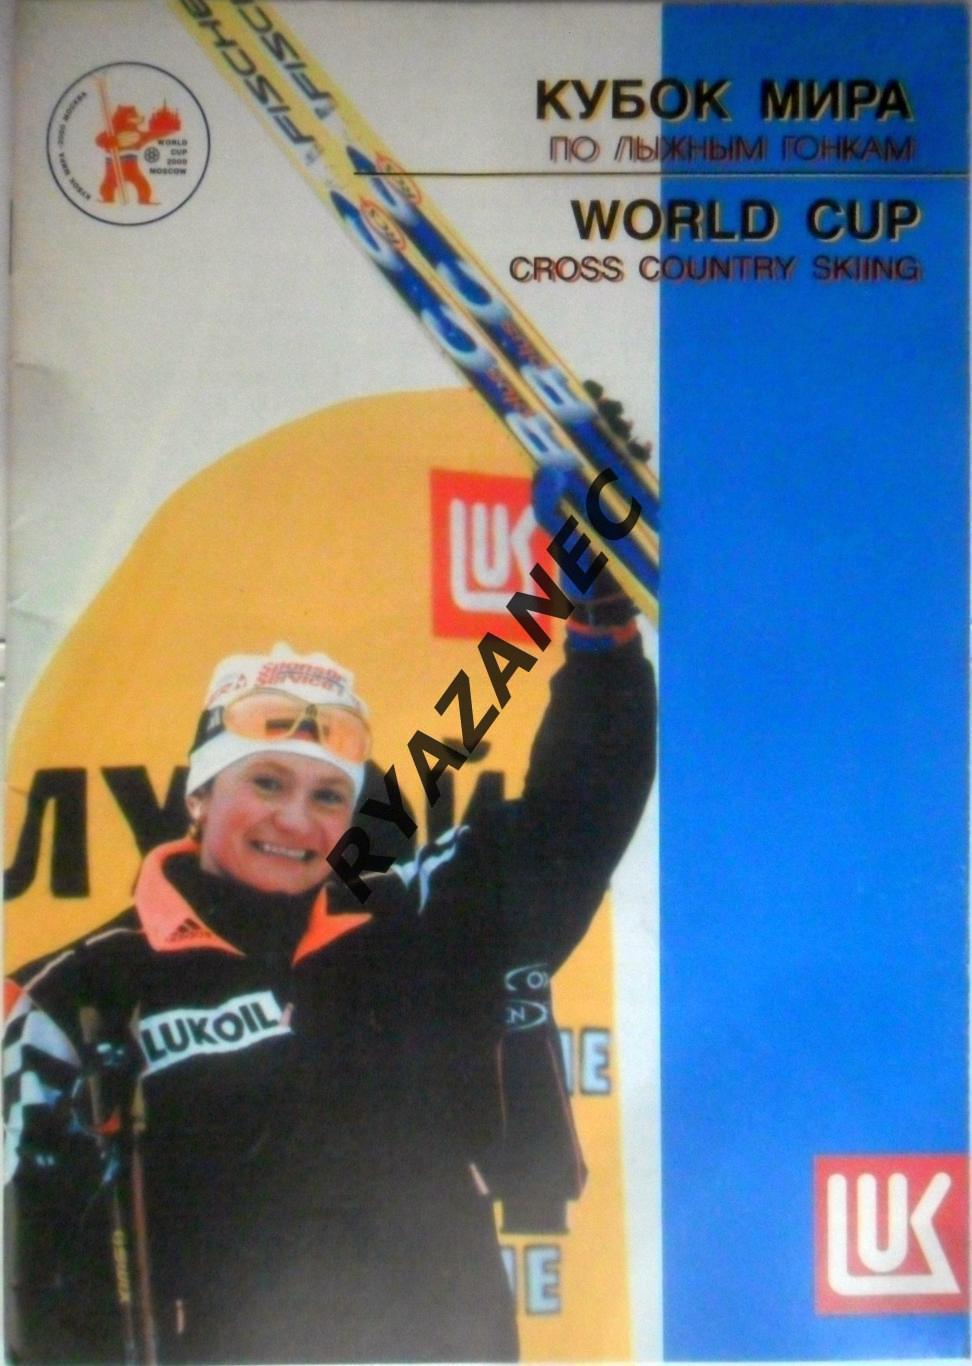 Кубок мира по лыжным гонкам - Москва, 8-9 января 2000 года.